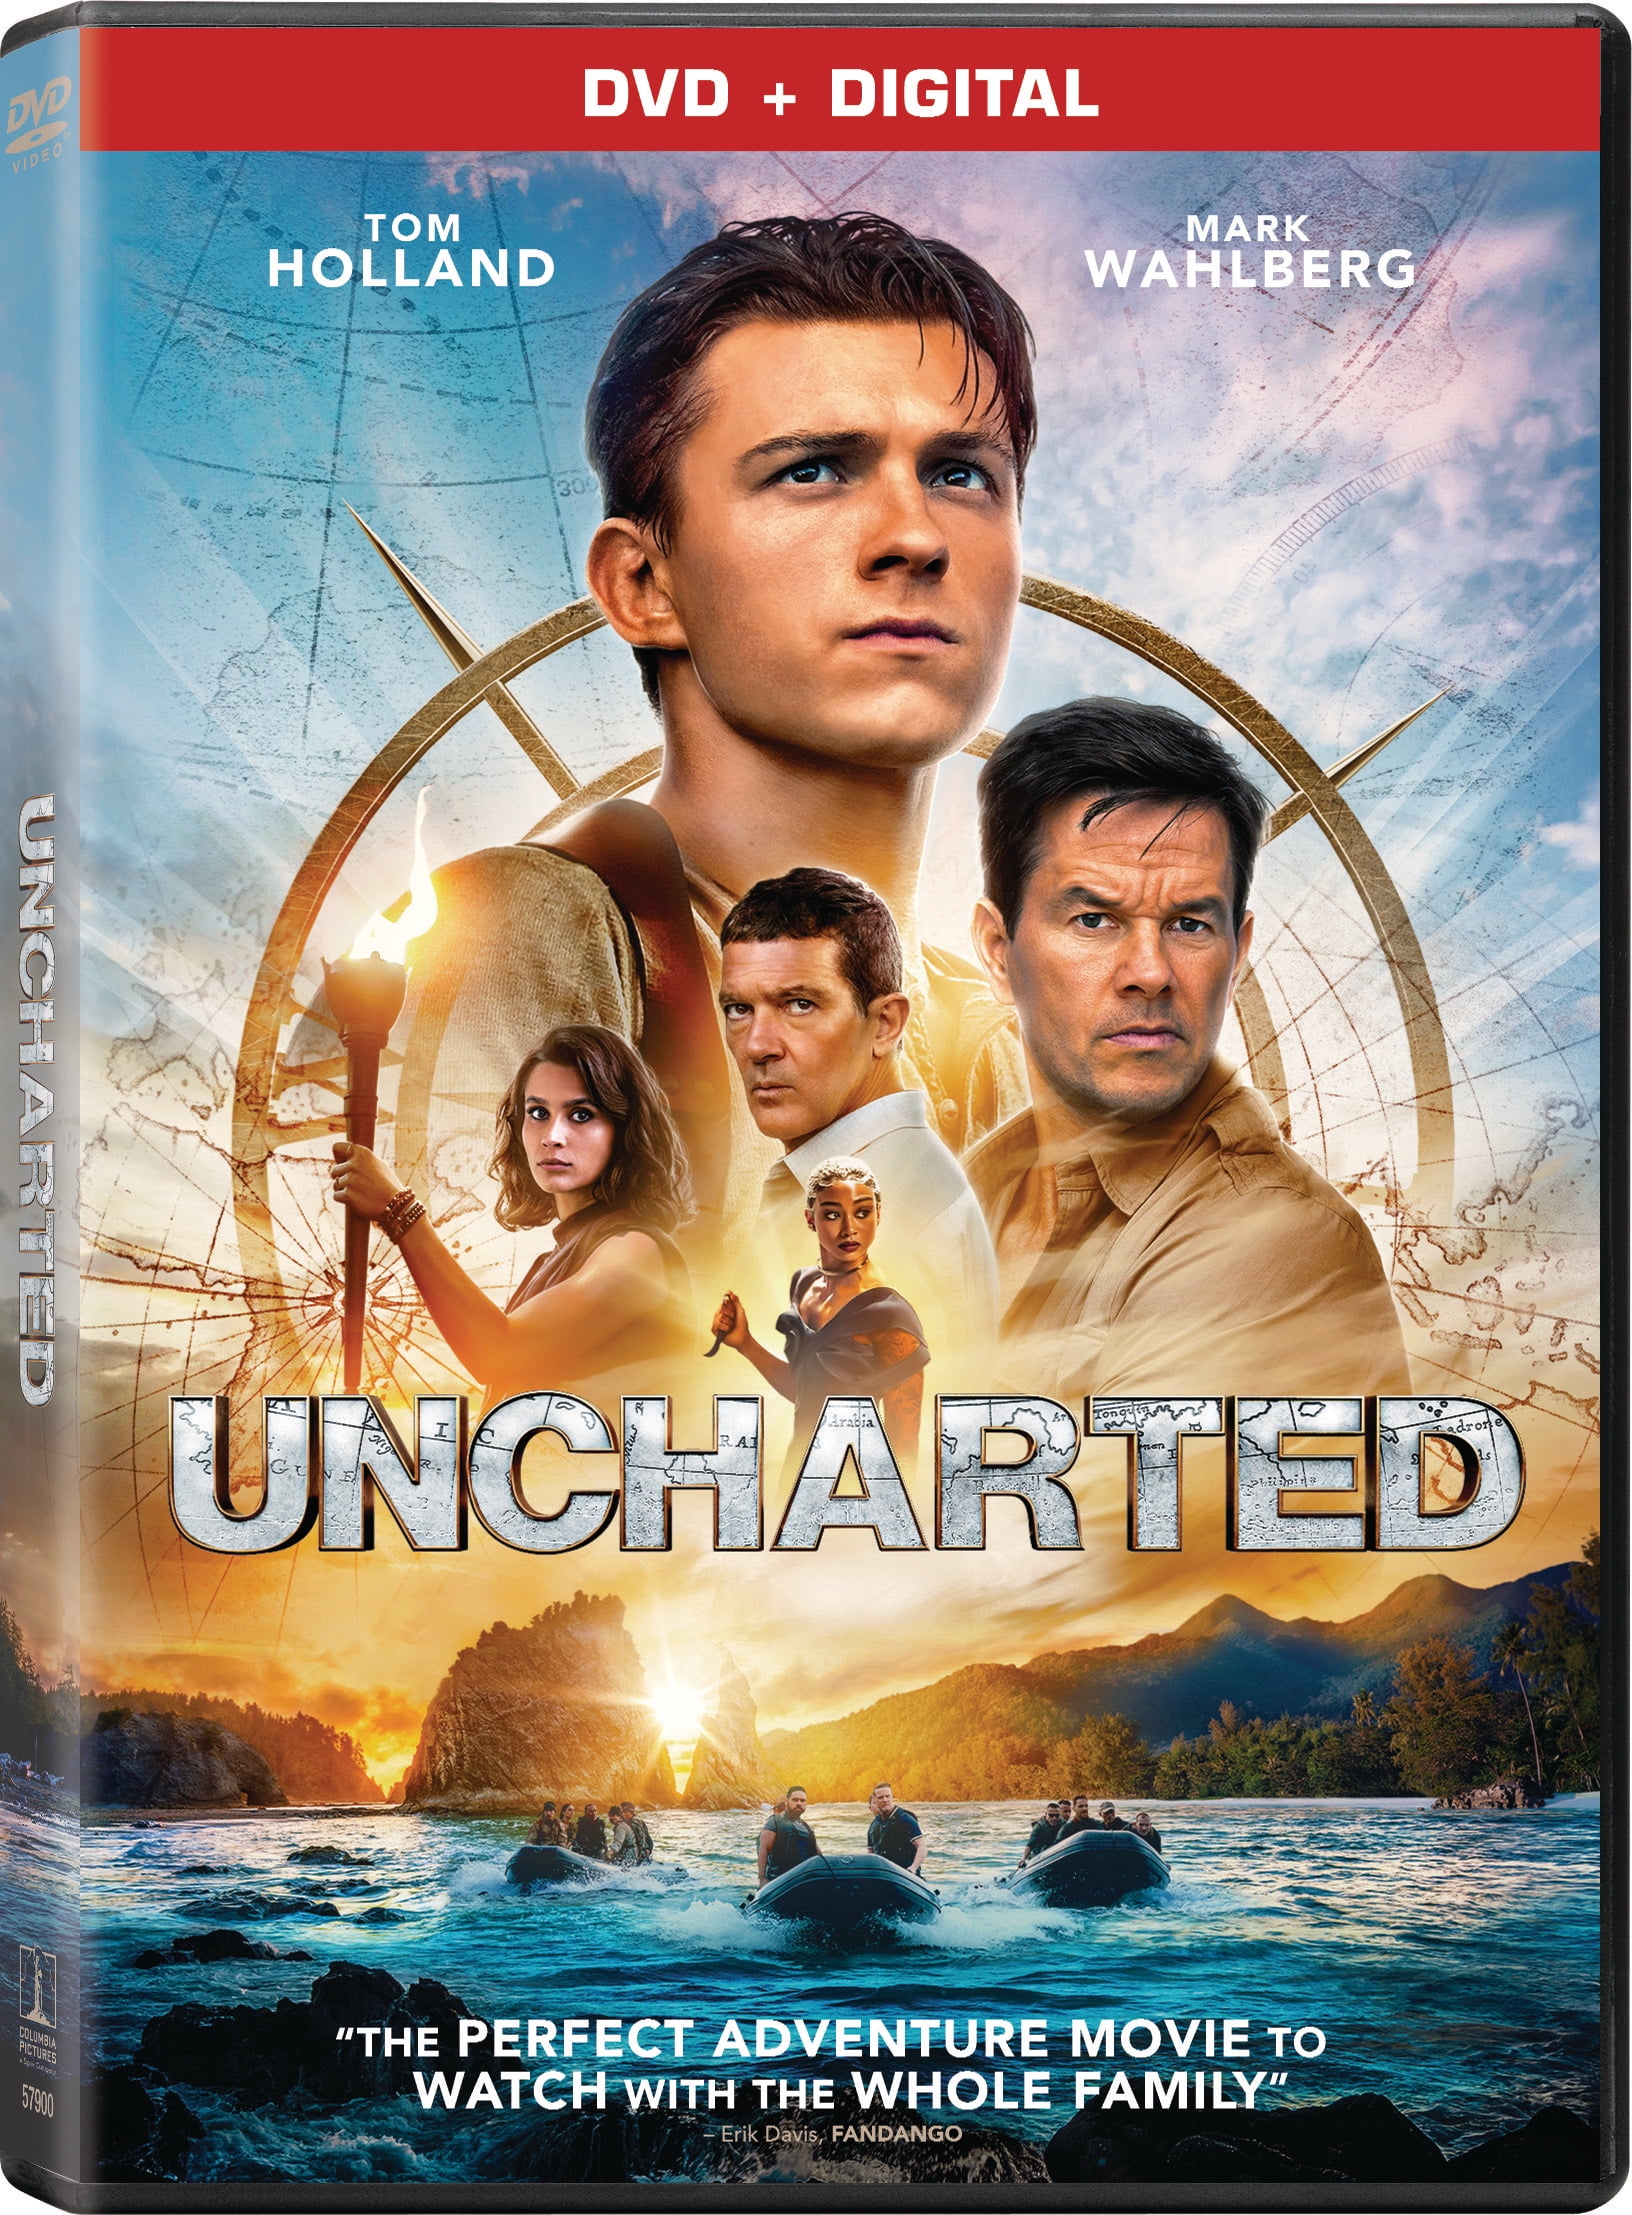 Uncharted (@unchartedmovie) / X